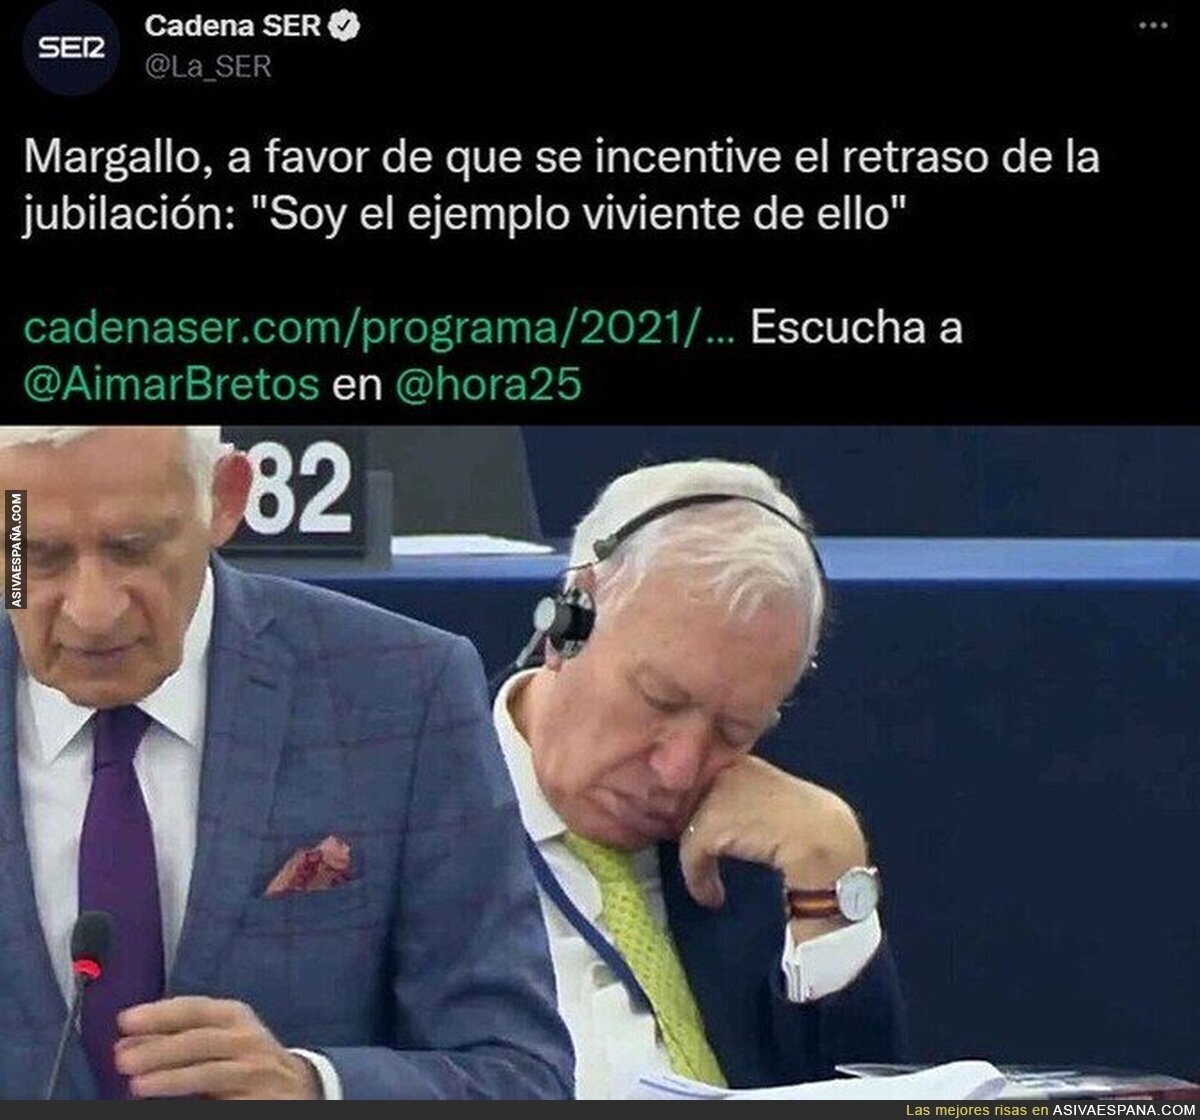 Margallo no es un buen ejemplo...